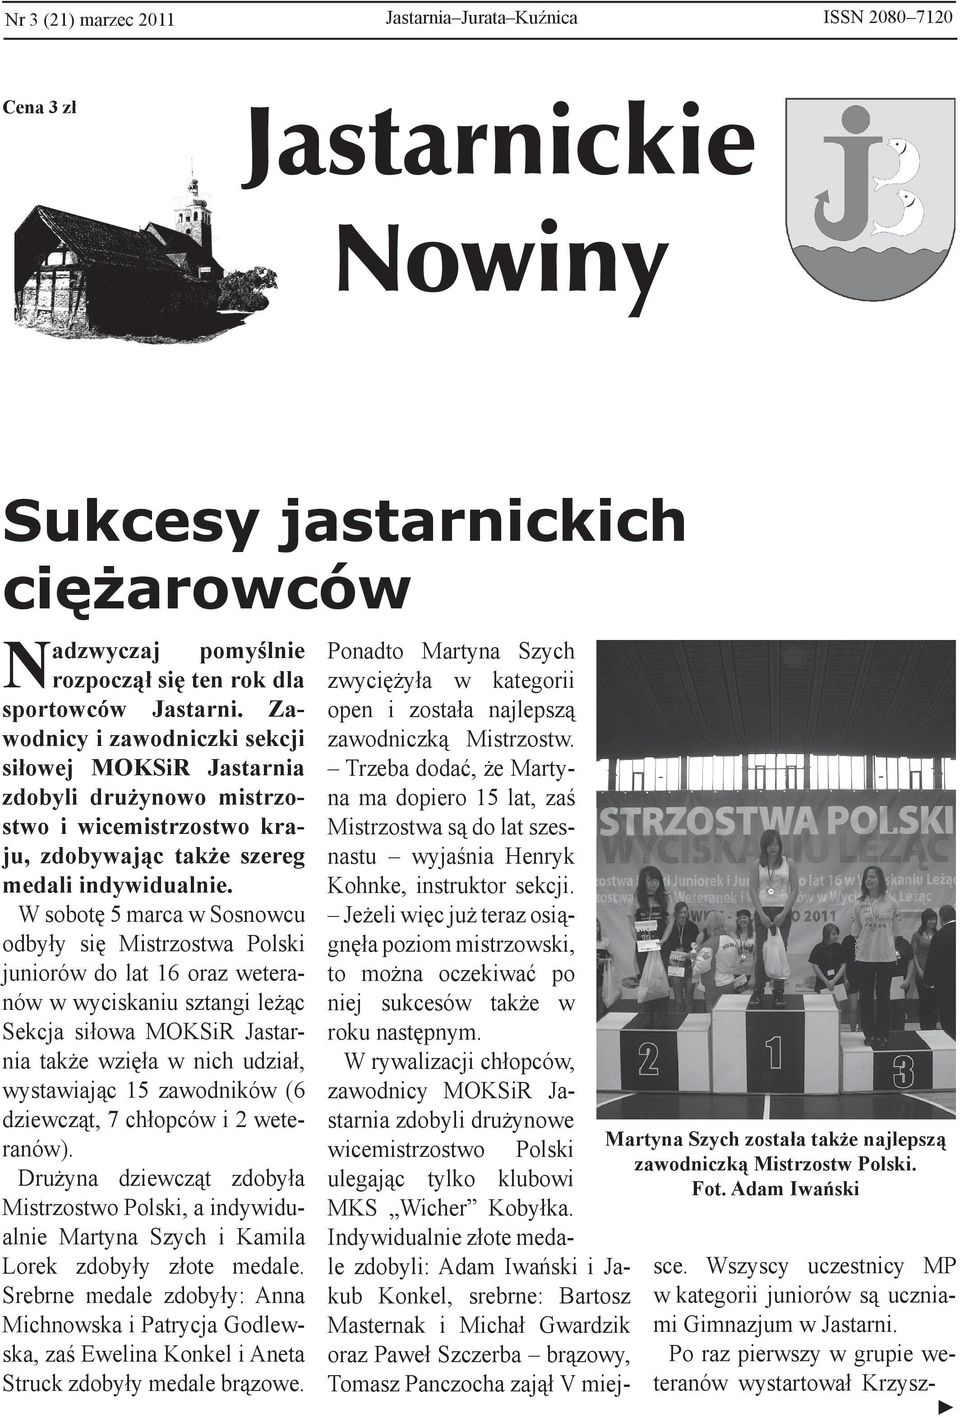 W sobotę 5 marca w Sosnowcu odbyły się Mistrzostwa Polski juniorów do lat 16 oraz weteranów w wyciskaniu sztangi leżąc Sekcja siłowa MOKSiR Jastarnia także wzięła w nich udział, wystawiając 15